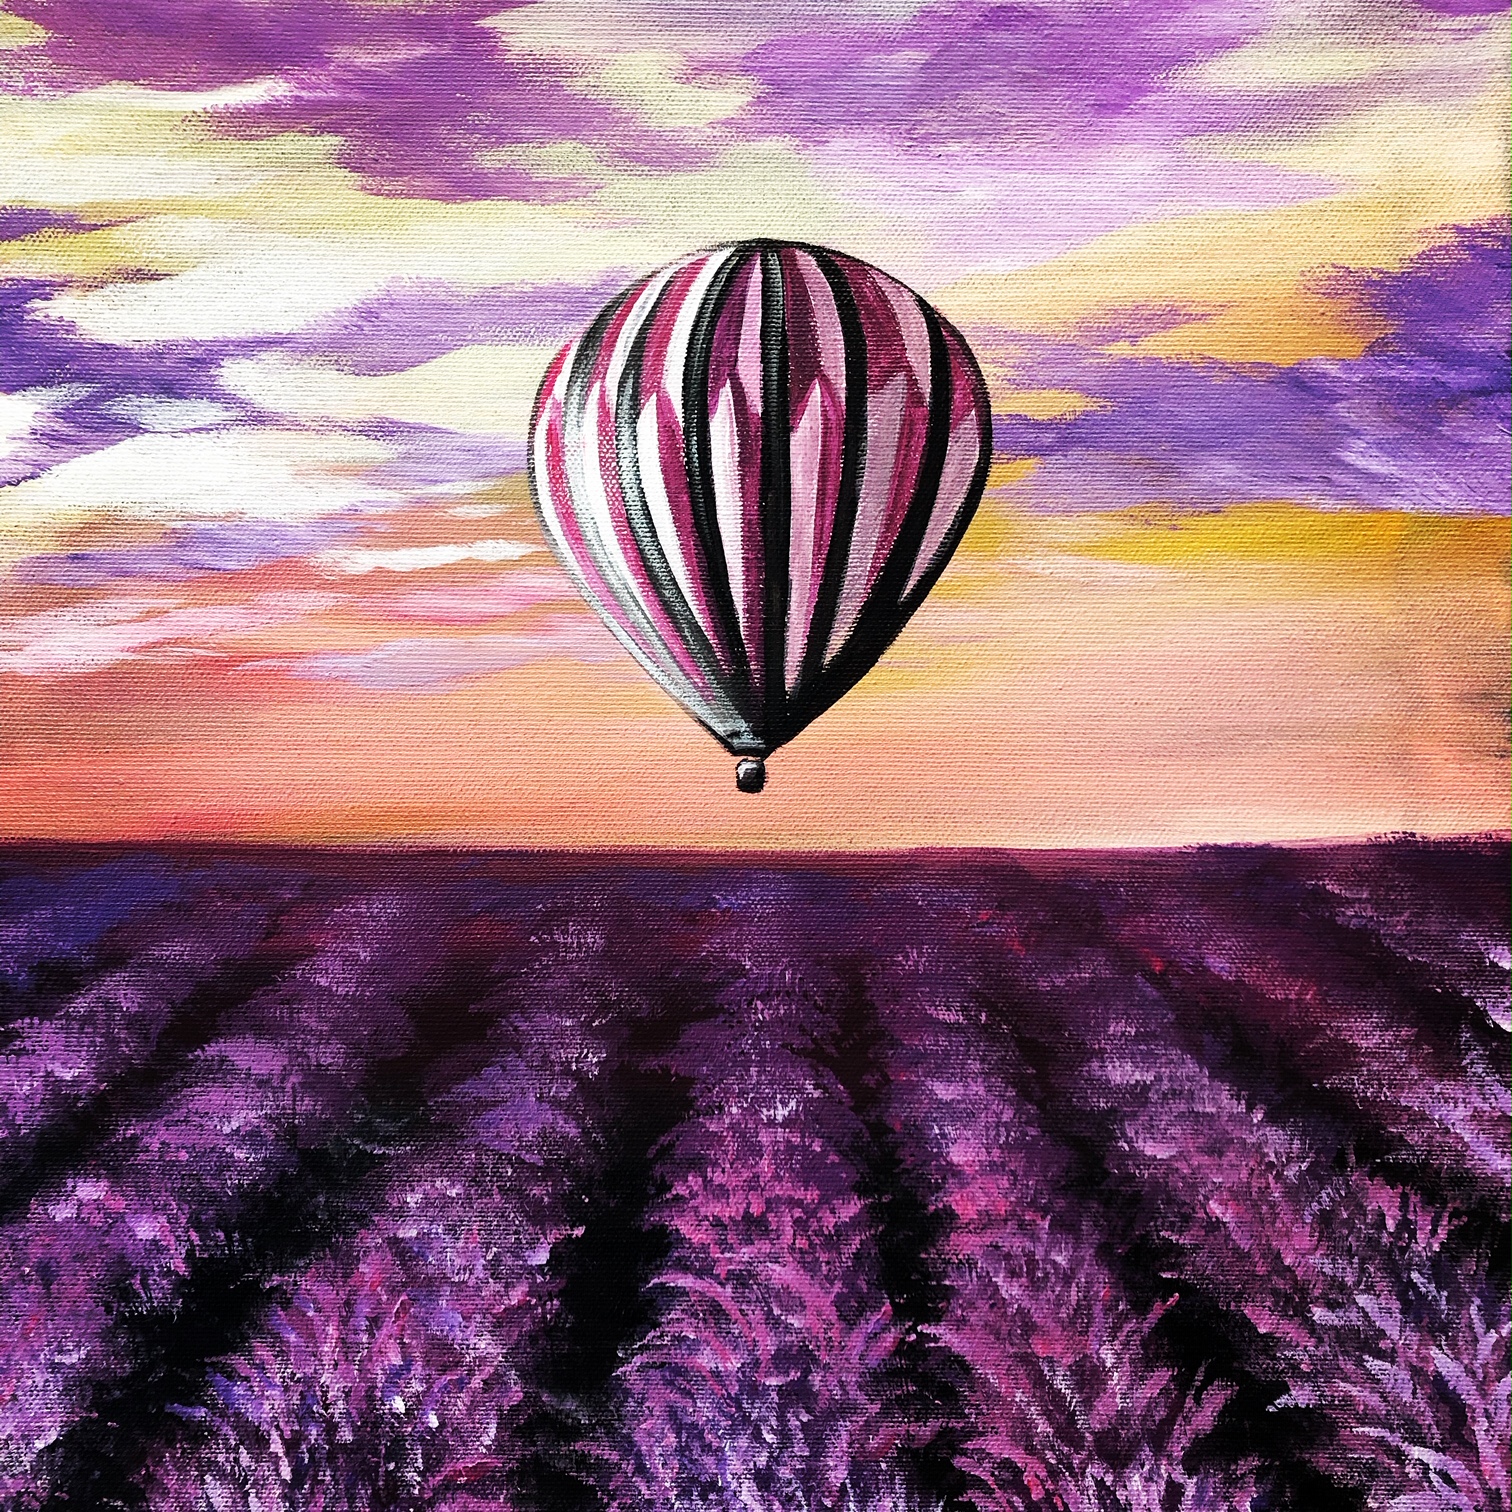 FessNeki : Ballon over the lavender field